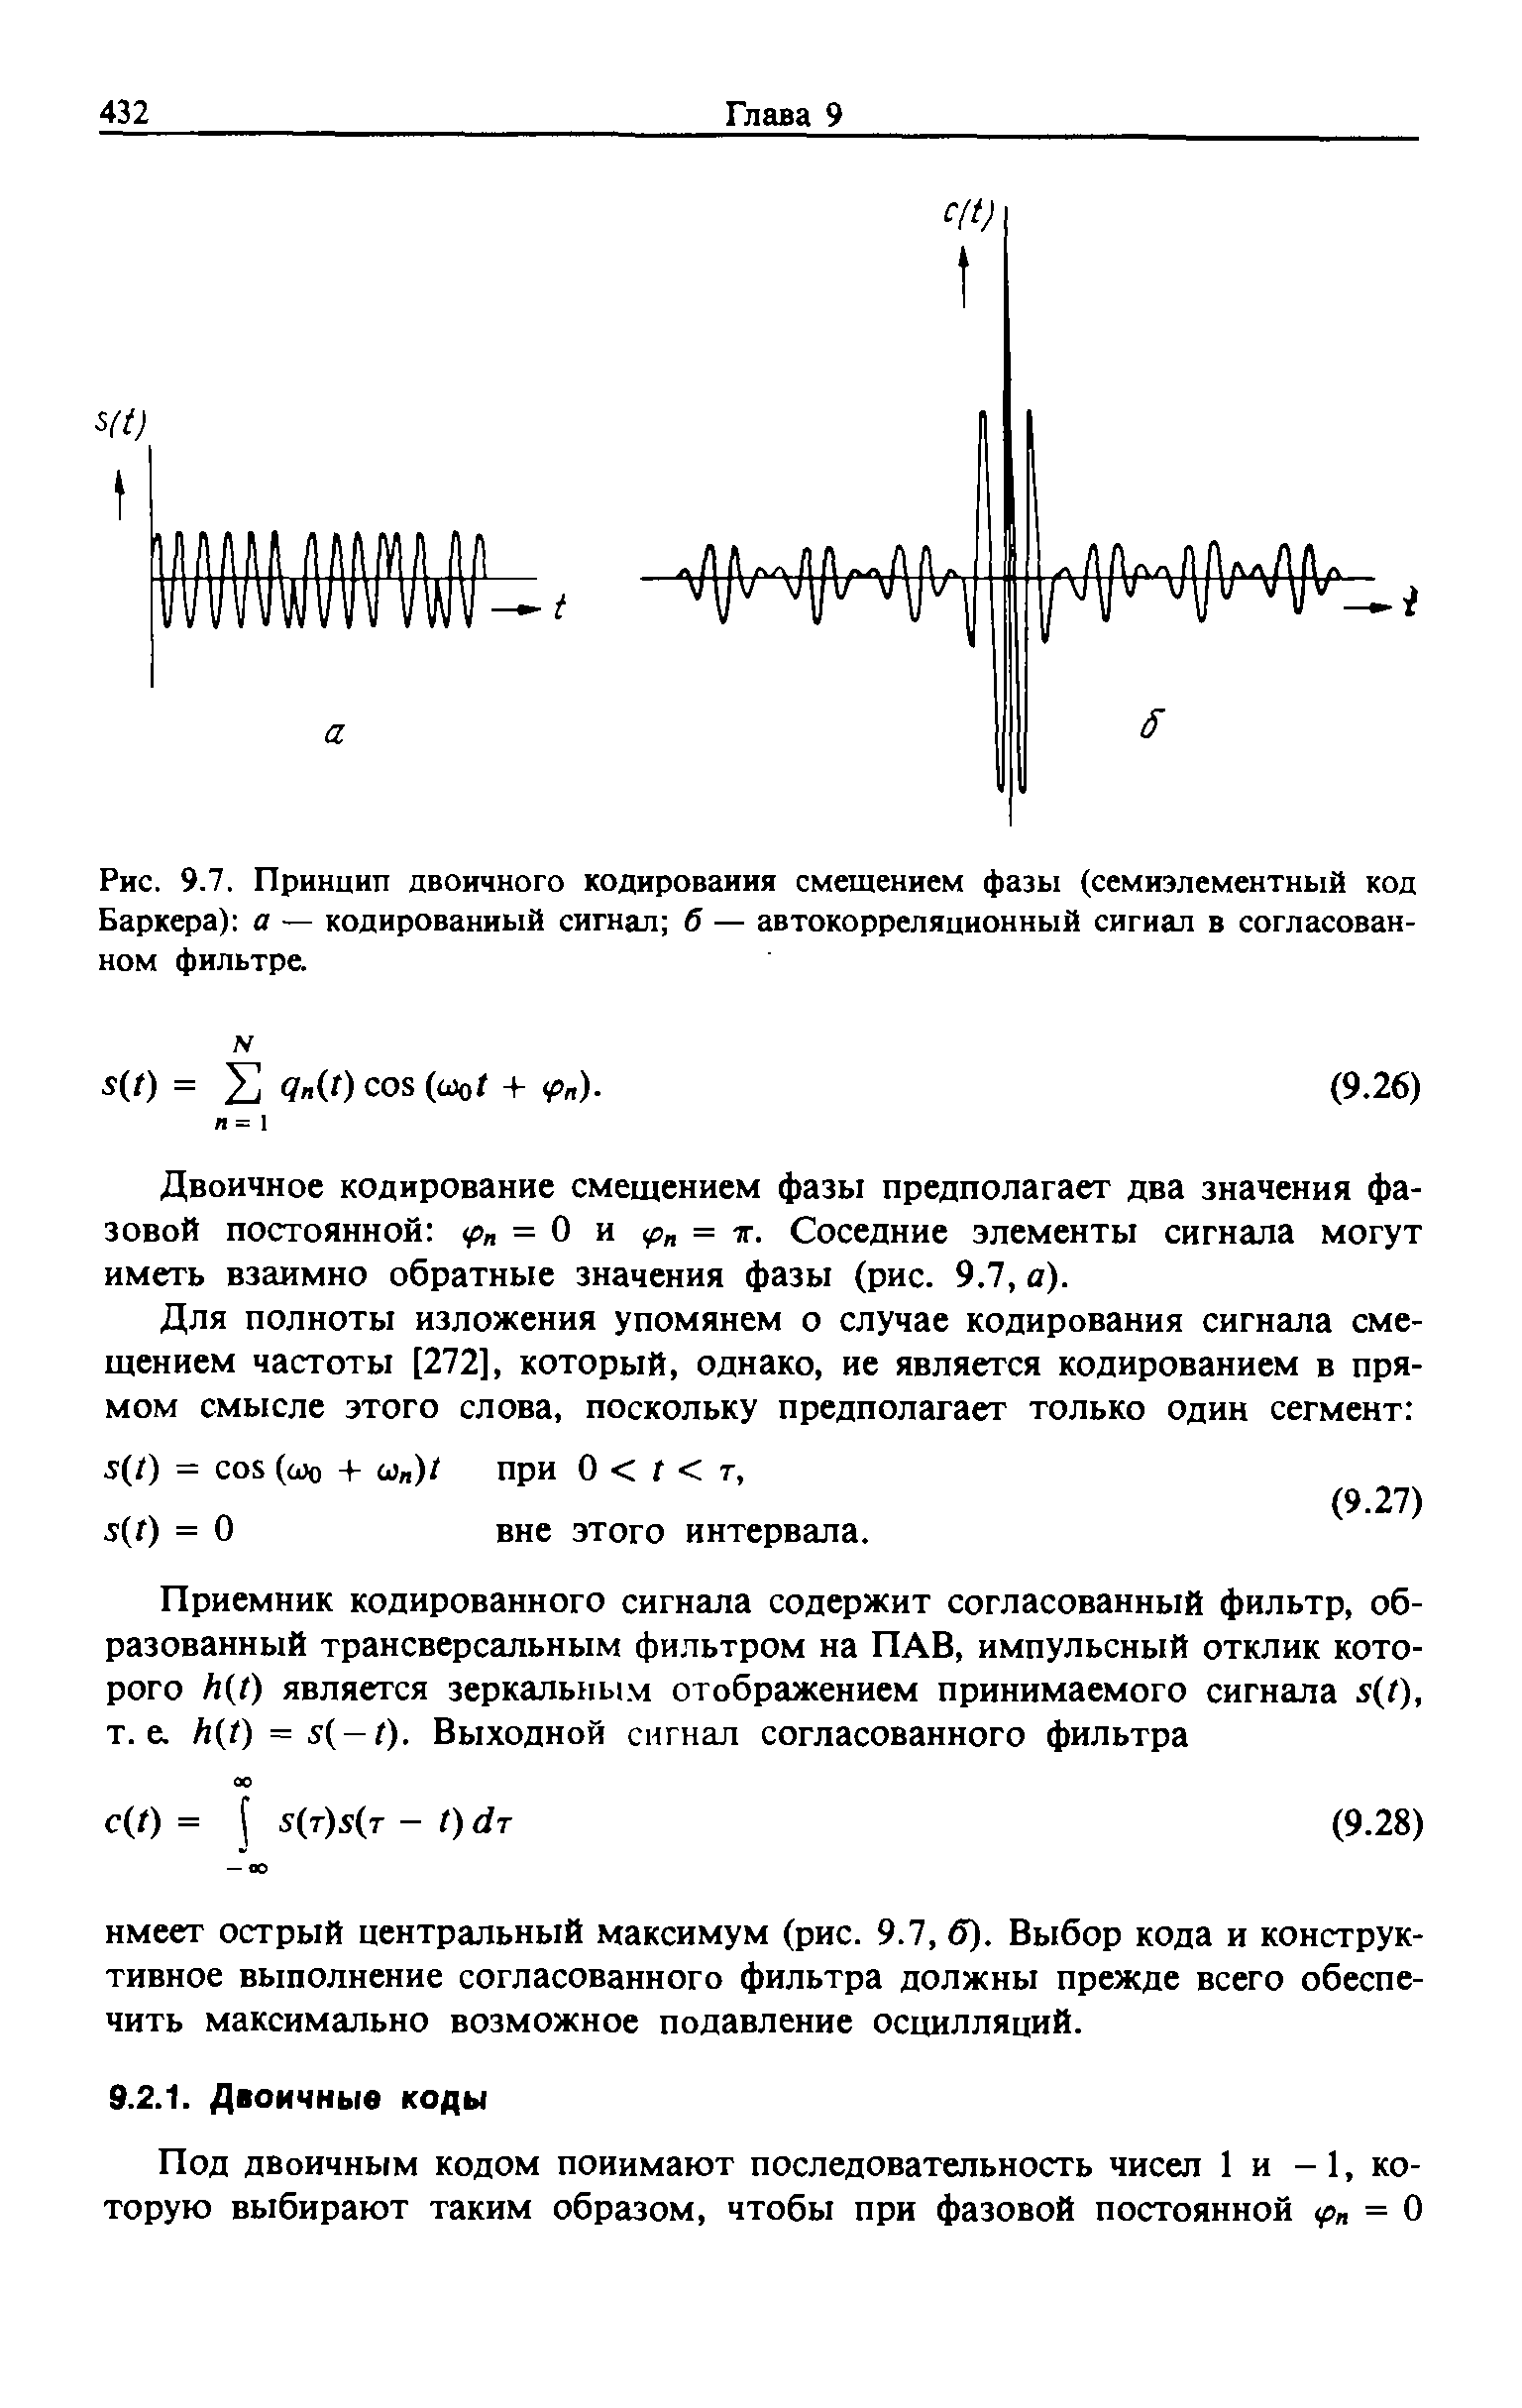 Рис. 9.7. Принцип двоичного кодирования смещением фазы (семиэлементный код Баркера) а — кодированный сигнал б — автокорреляционный сигнал в согласованном фильтре.
